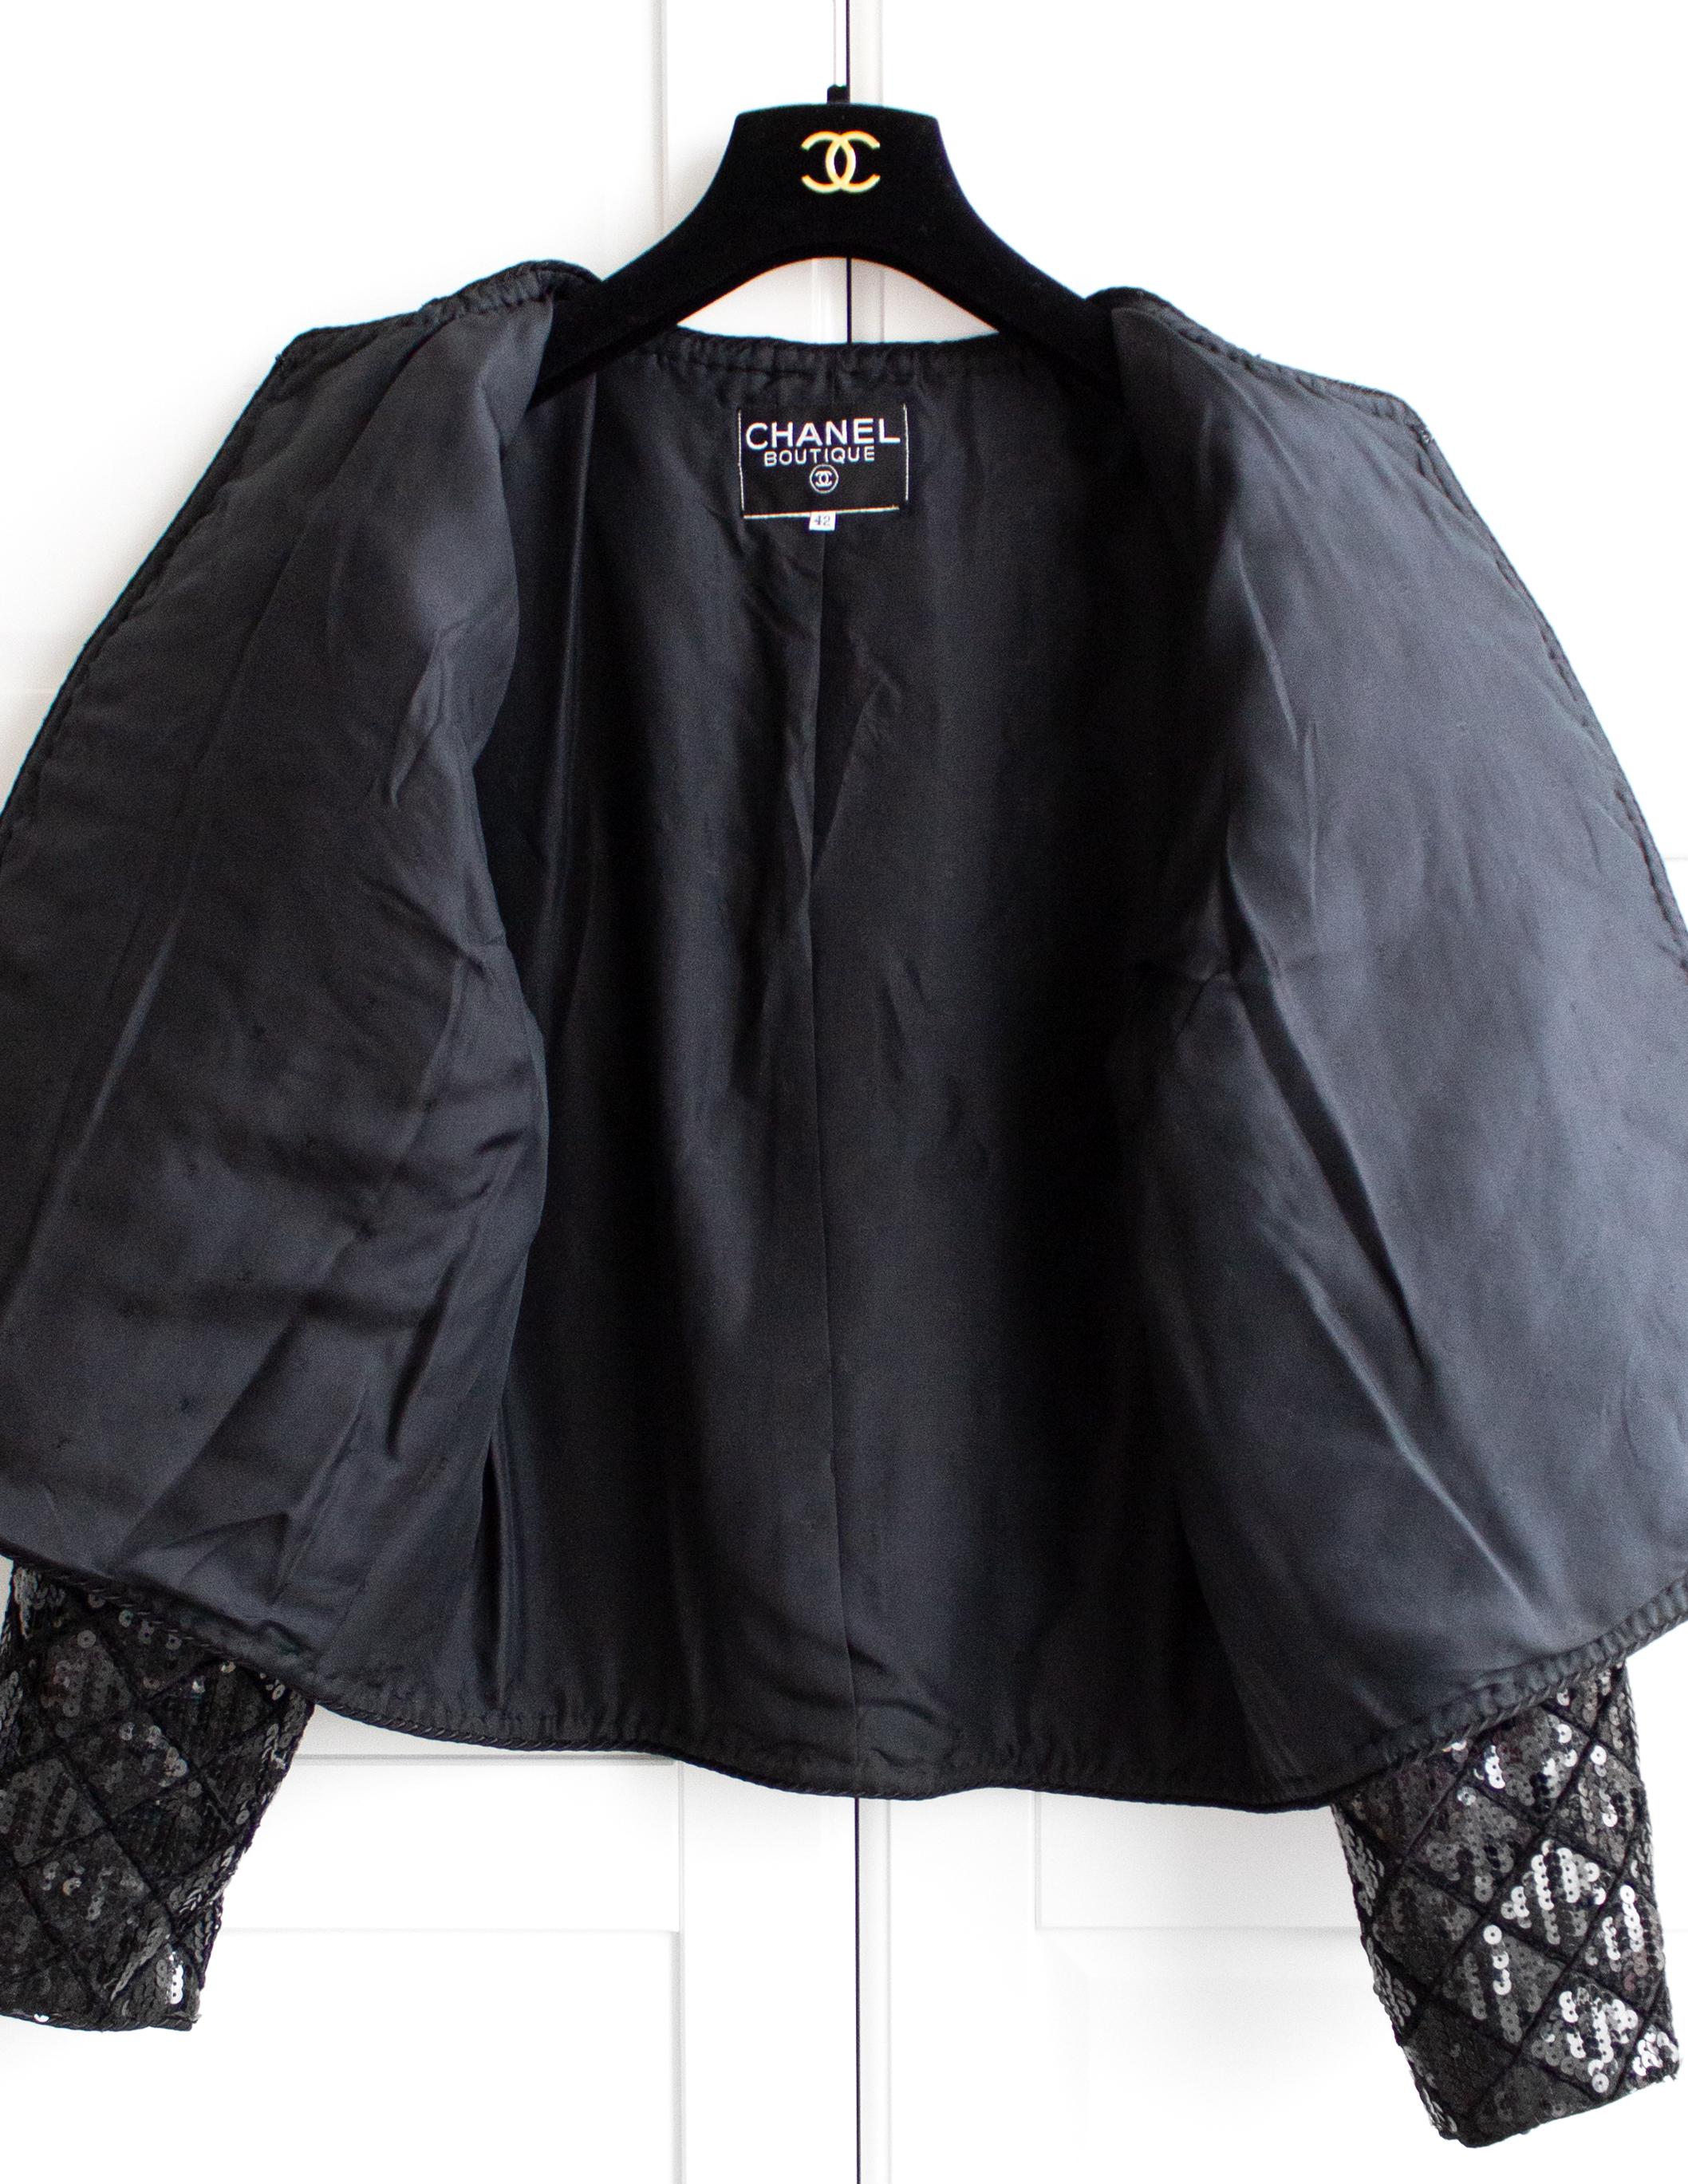 Rare Chanel Vintage S/S 1987 Black Quilted Sequin Embellished Jacket 8